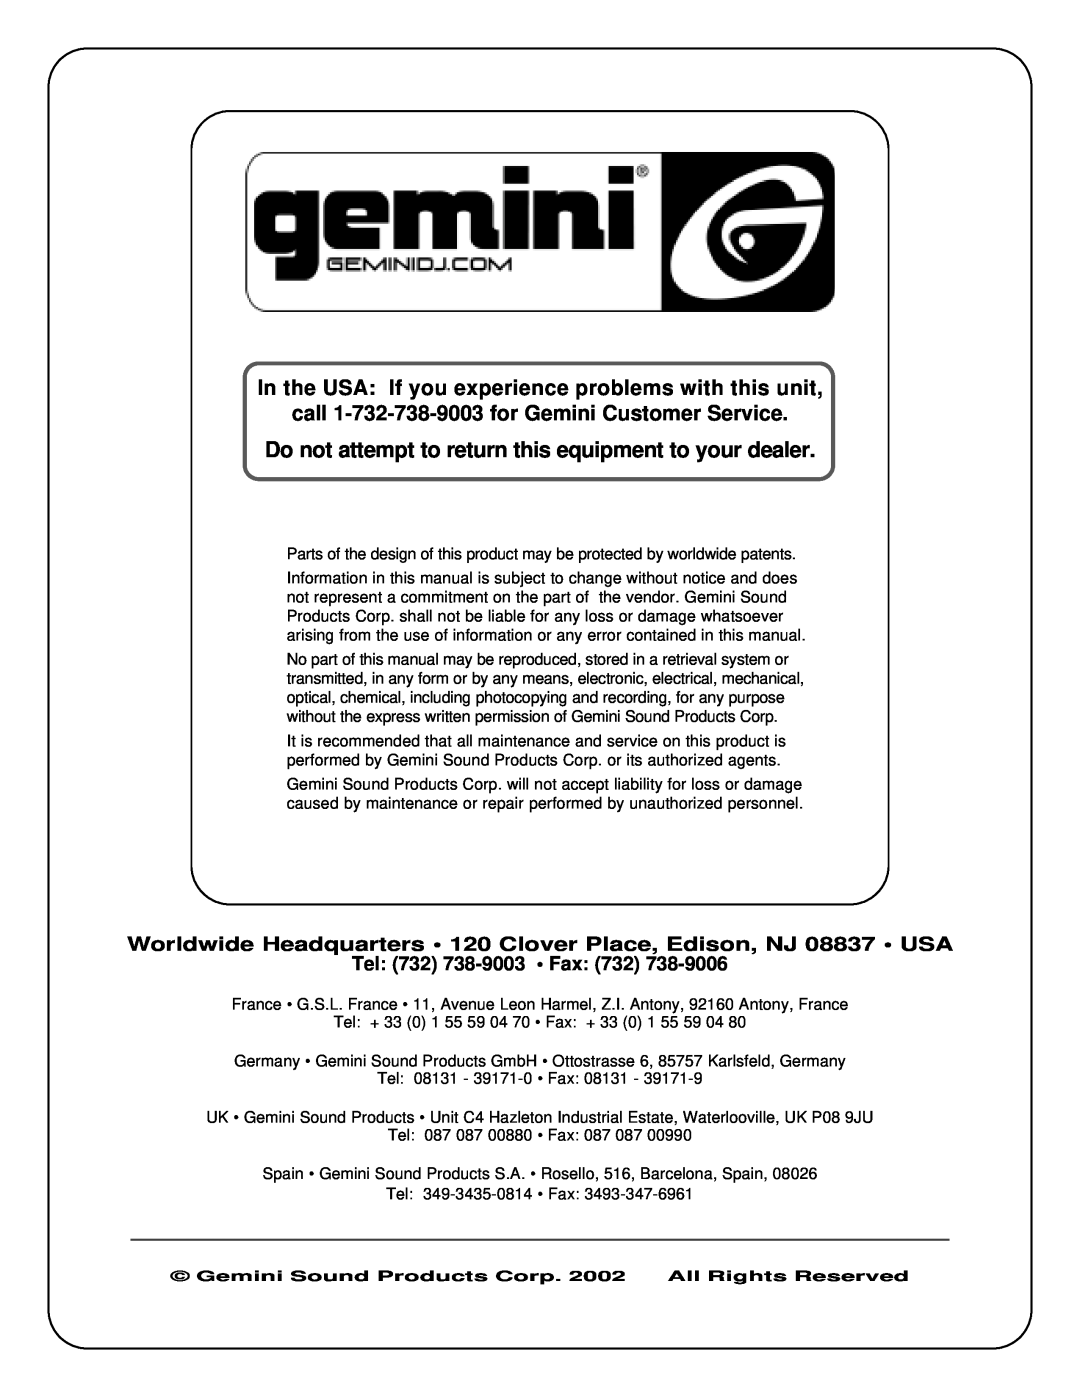 Gemini CD-110 manual call 1-732-738-9003for Gemini Customer Service, Tel 732 738-9003 Fax 